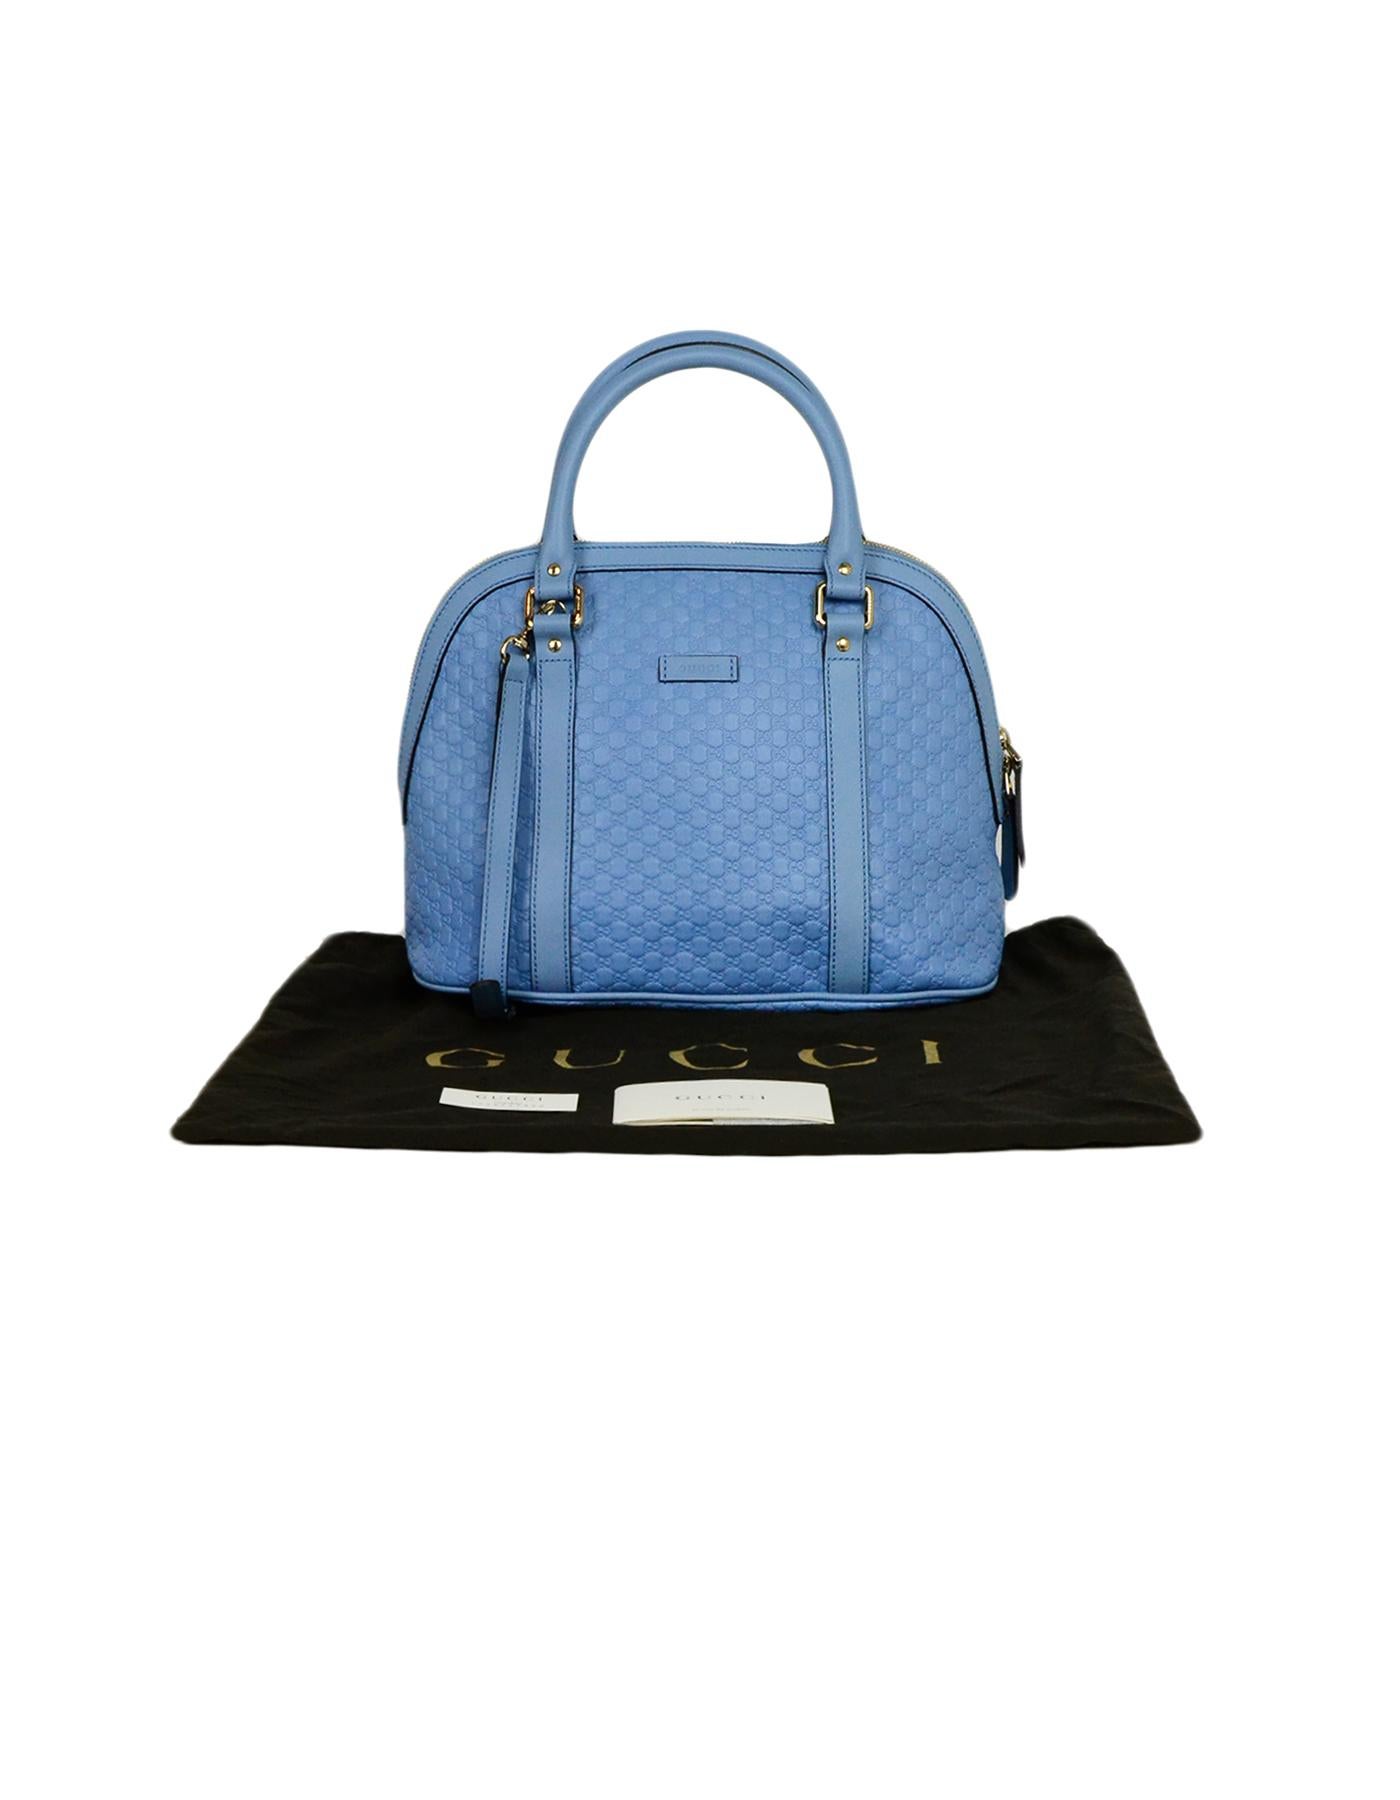 Gucci Light Blue Leather Microguccissima Monogram Dome Bag w/ Strap 3